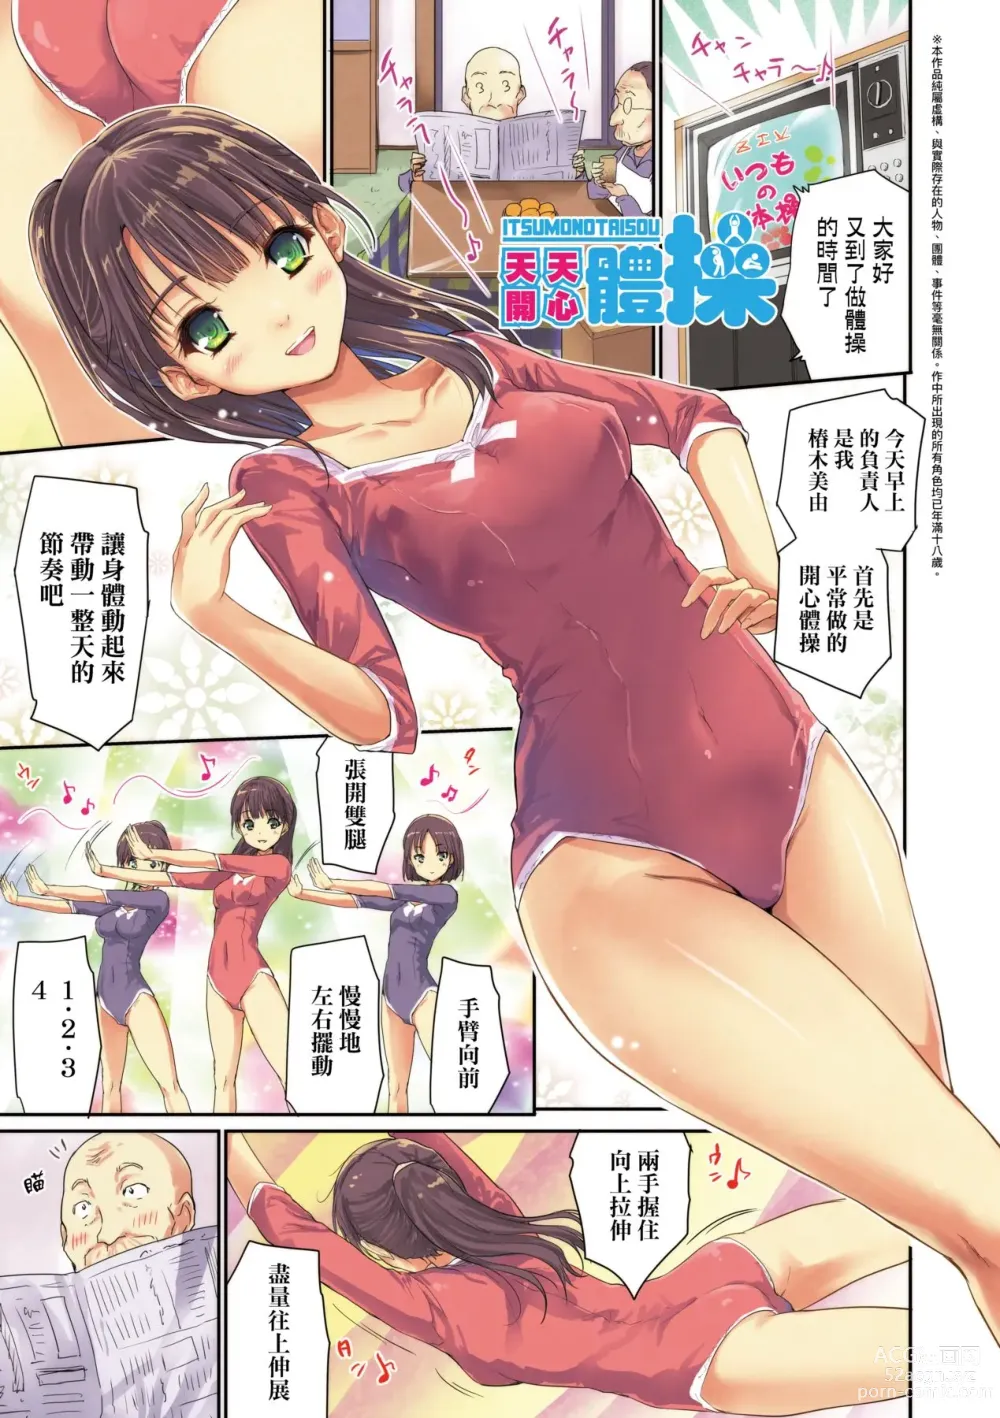 Page 8 of manga 把玩妳綿軟歐派並含入口中品嘗 (decensored)